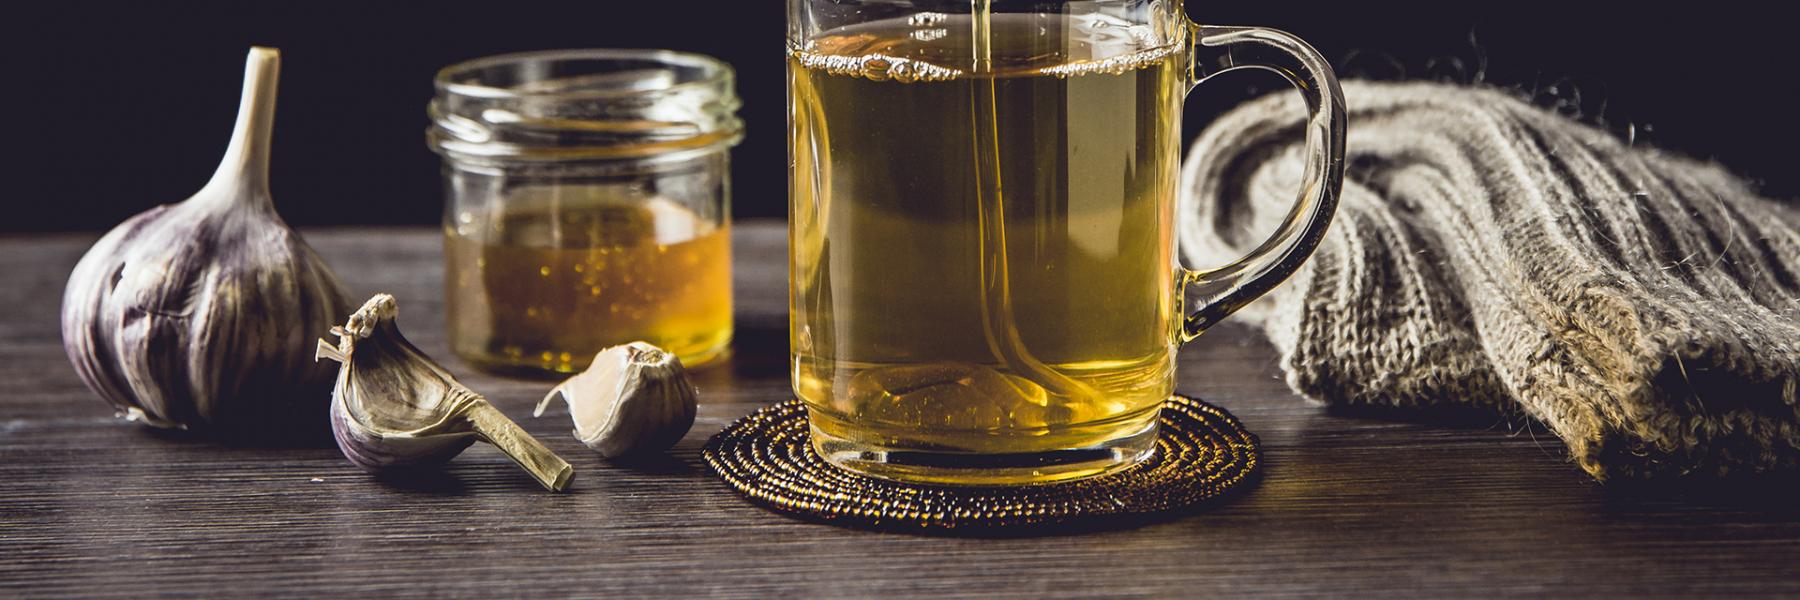 فوائد الثوم مع العسل للتنحيف